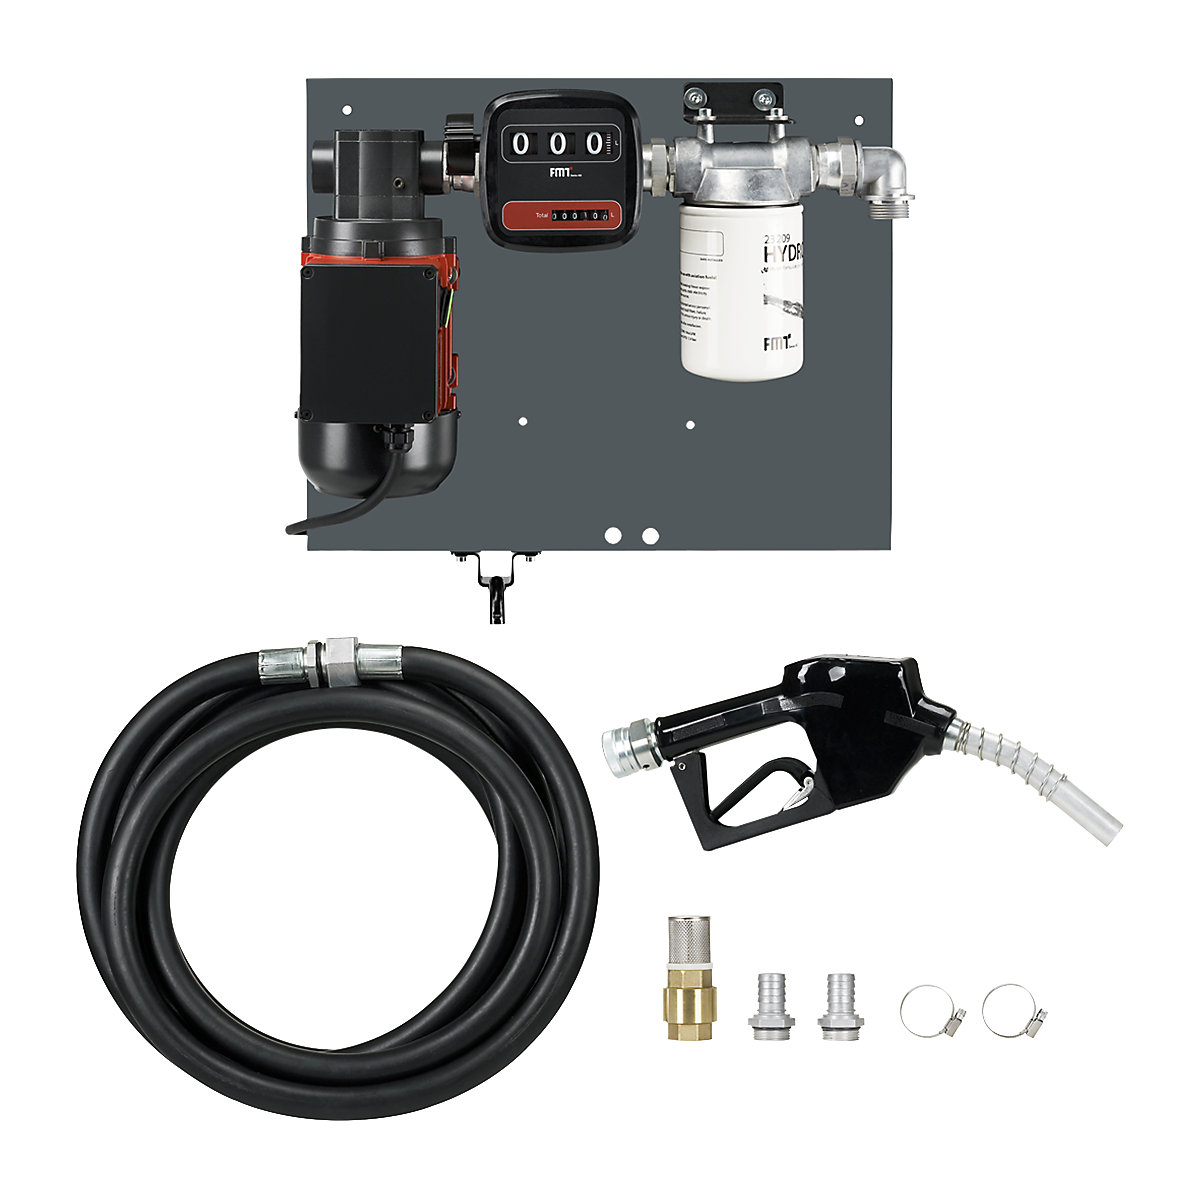 Vane pump for heating oil/diesel - PRESSOL